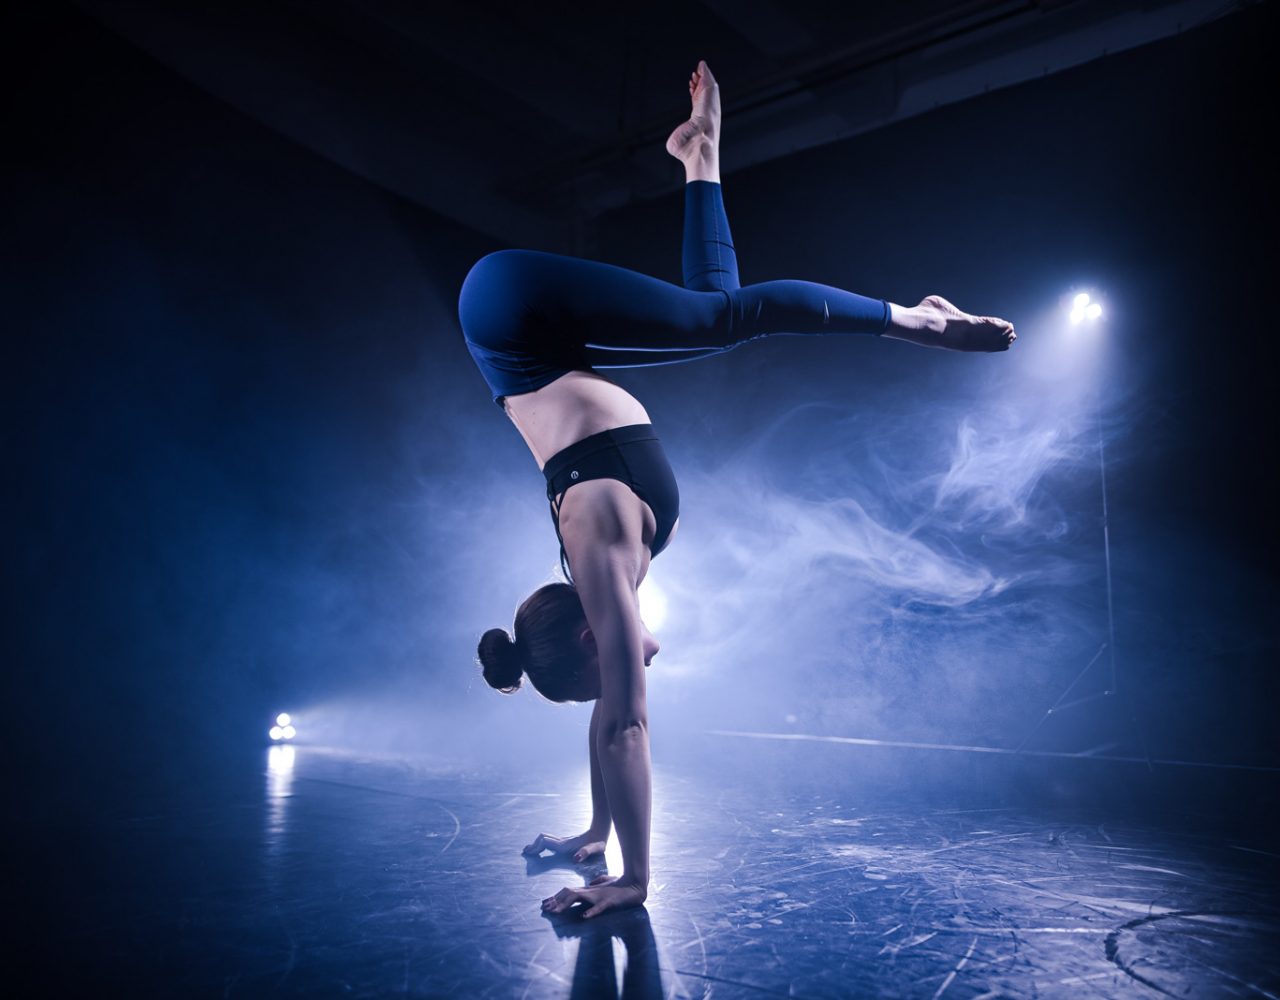 Akrobatin im Handstand auf der Bühne im Scheinwerferlicht mit Nebel im Hintergrund